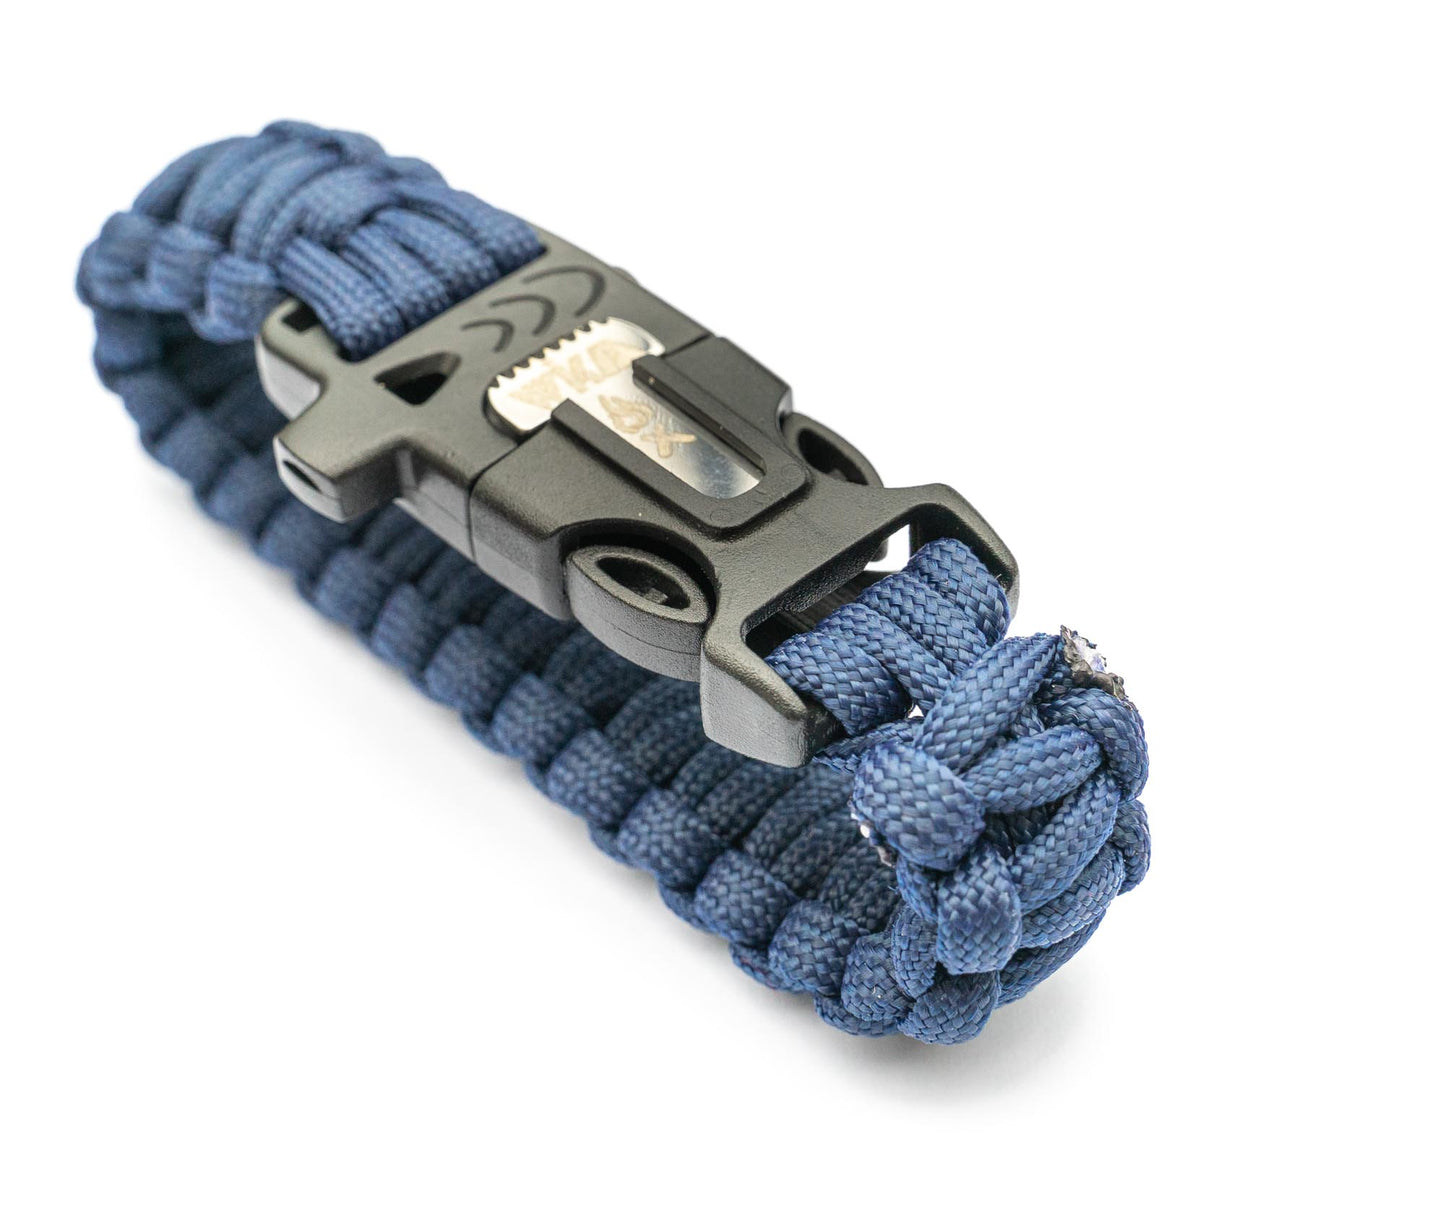 Survival bracelet paracord with flint